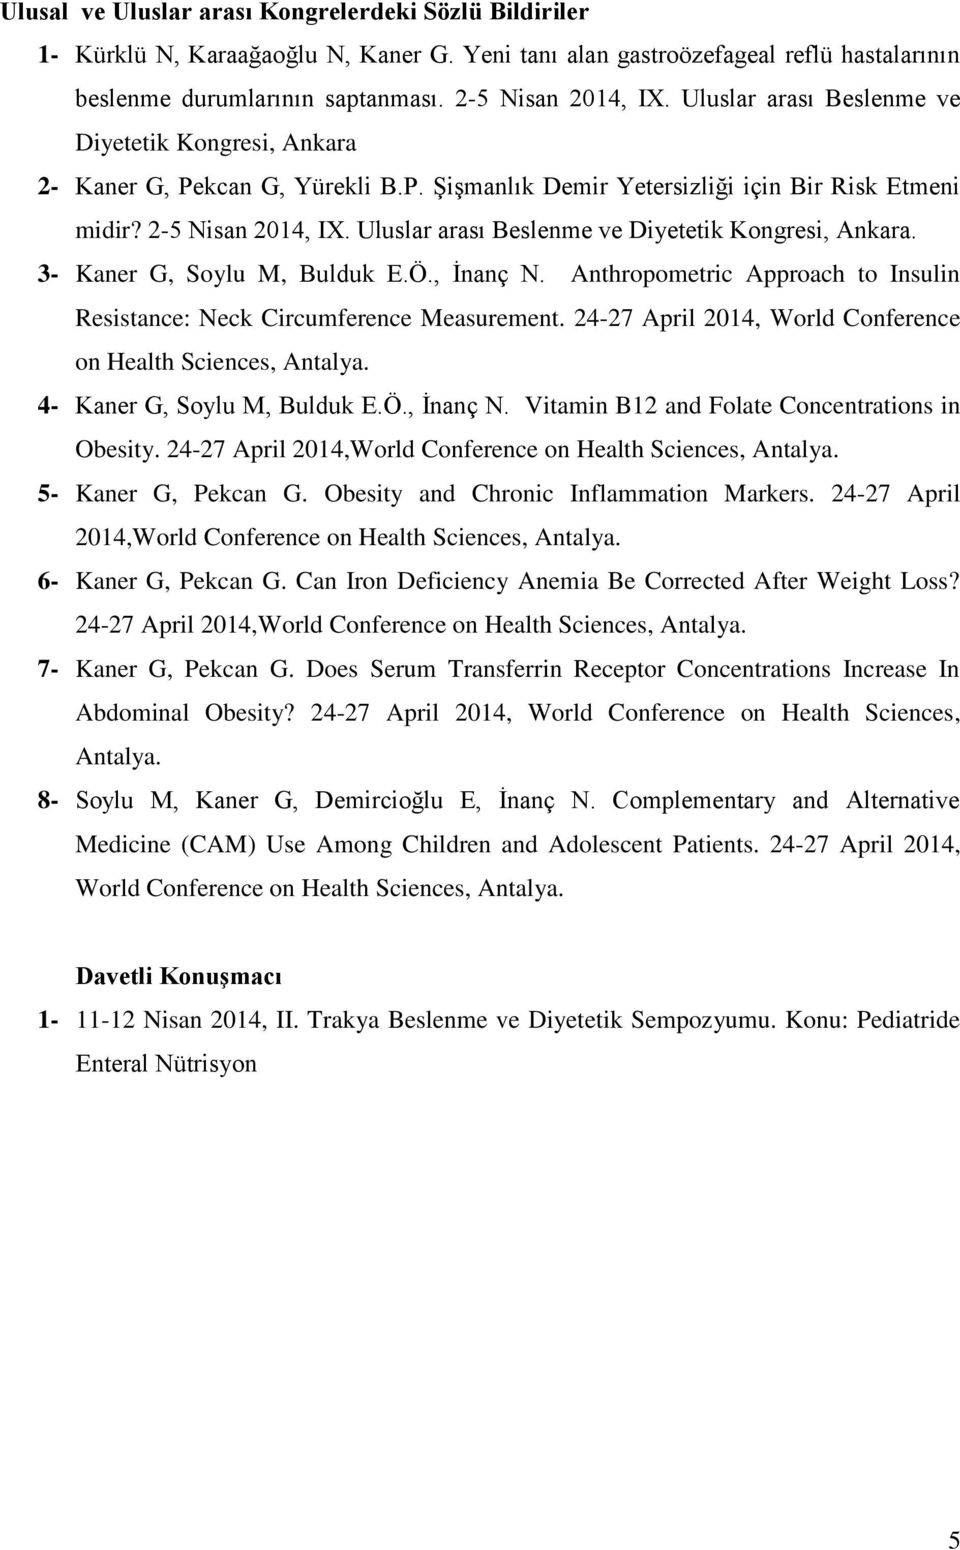 Uluslar arası Beslenme ve Diyetetik Kongresi, Ankara. 3- Kaner G, Soylu M, Bulduk E.Ö., İnanç N. Anthropometric Approach to Insulin Resistance: Neck Circumference Measurement.